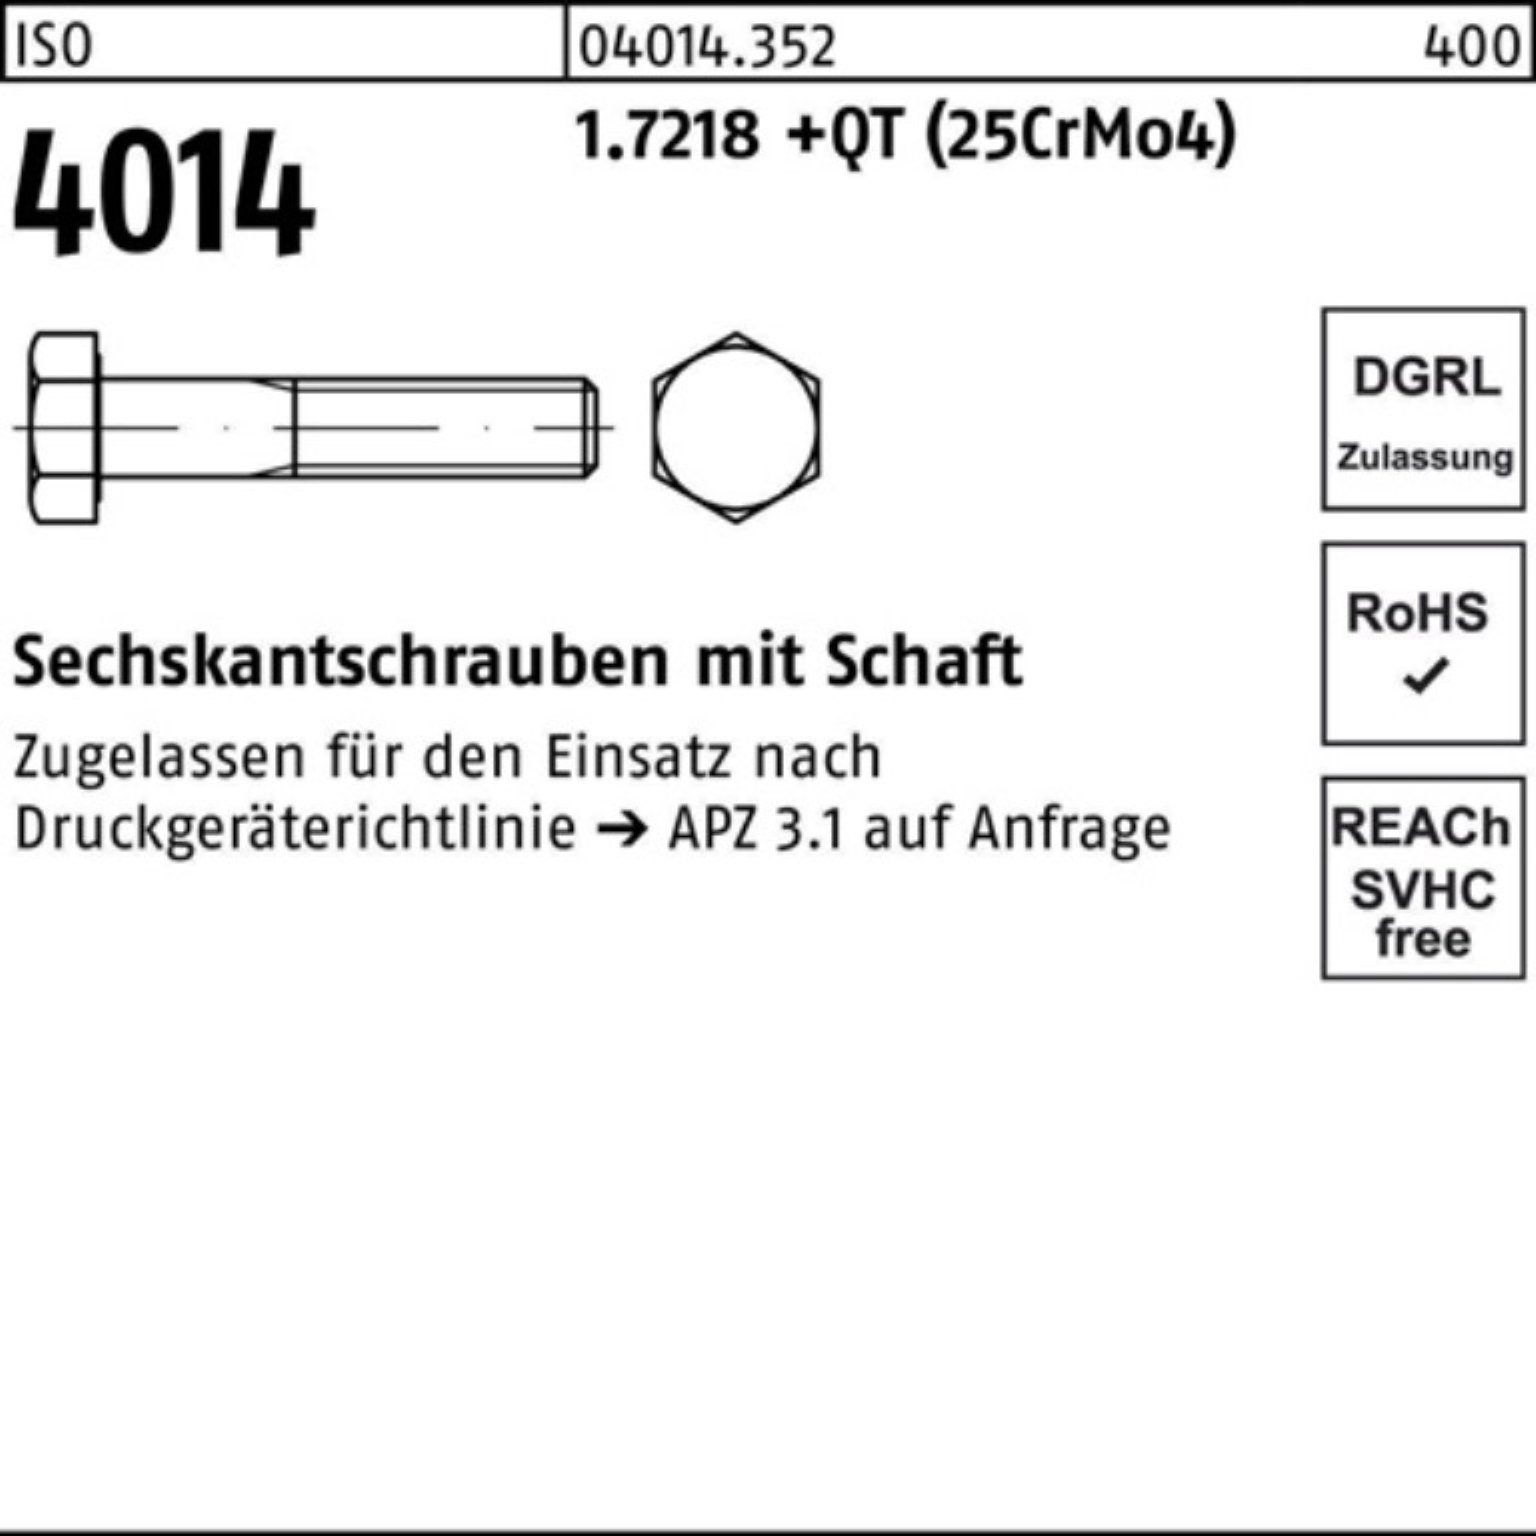 M24x Bufab Sechskantschraube 1.7218 Pack 4014 Schaft Sechskantschraube 160 +QT ISO (25Cr 100er